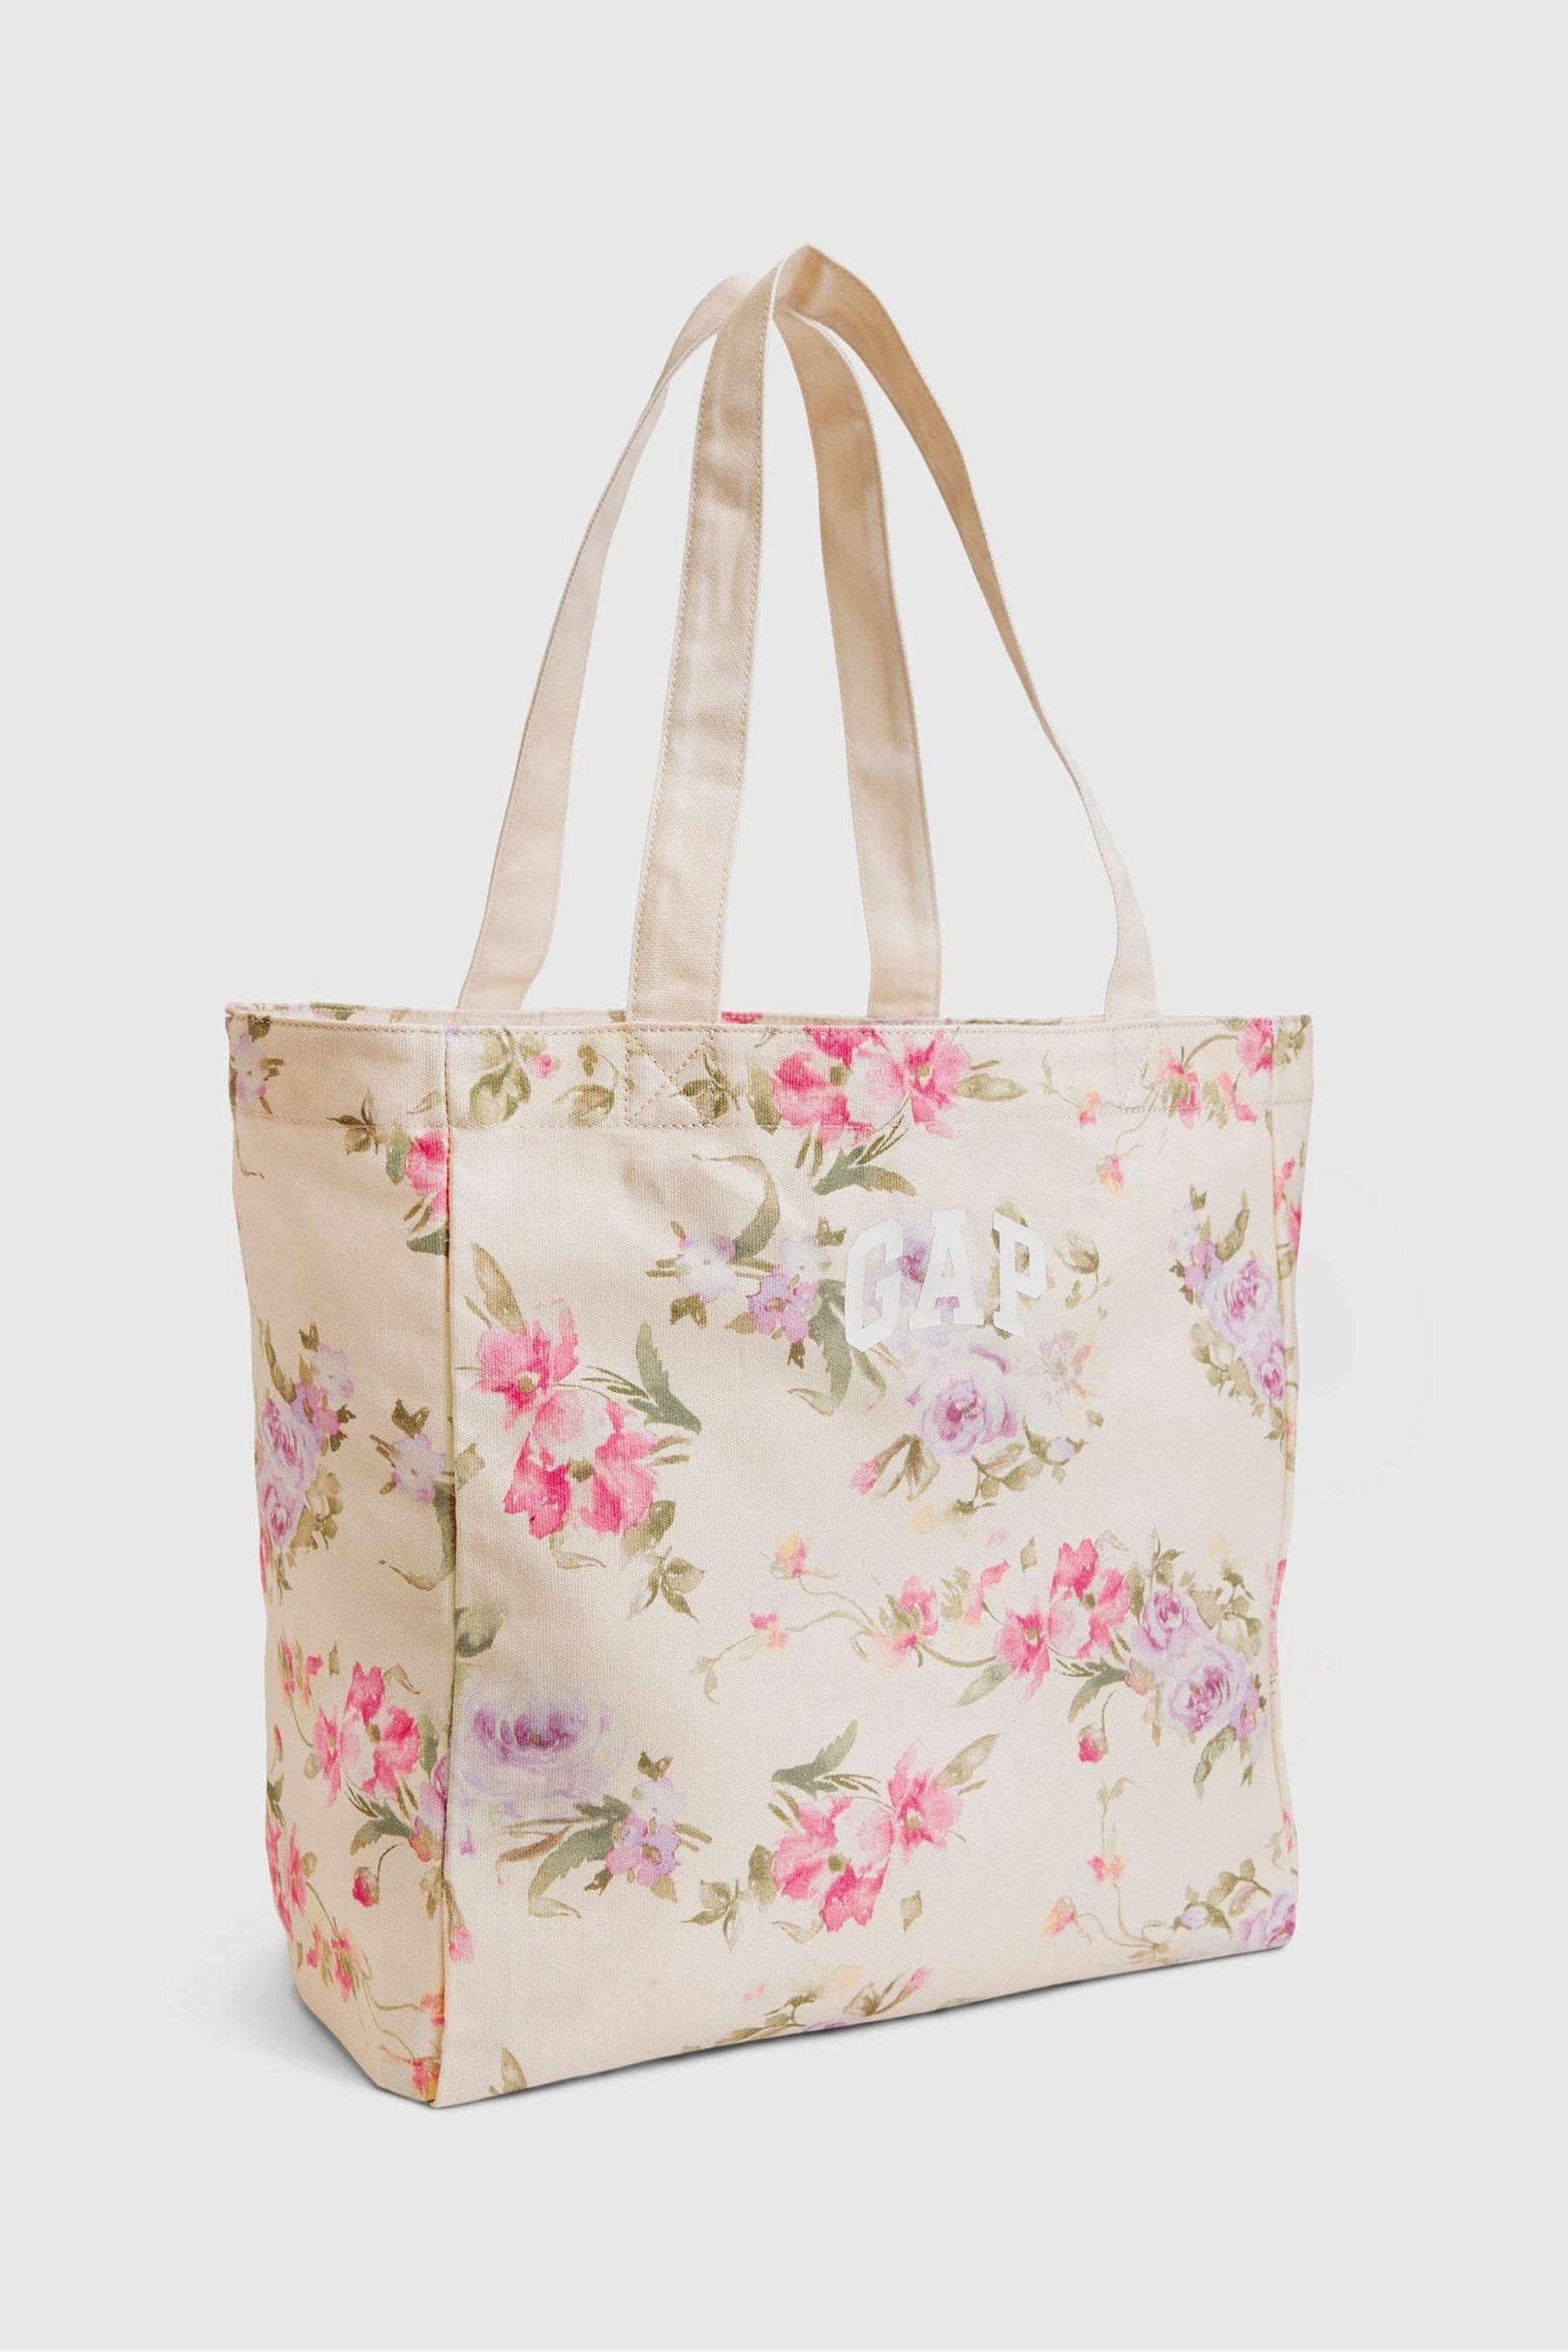 Buy Gap LoveShackFancy Floral Tote Bag from the Gap online shop